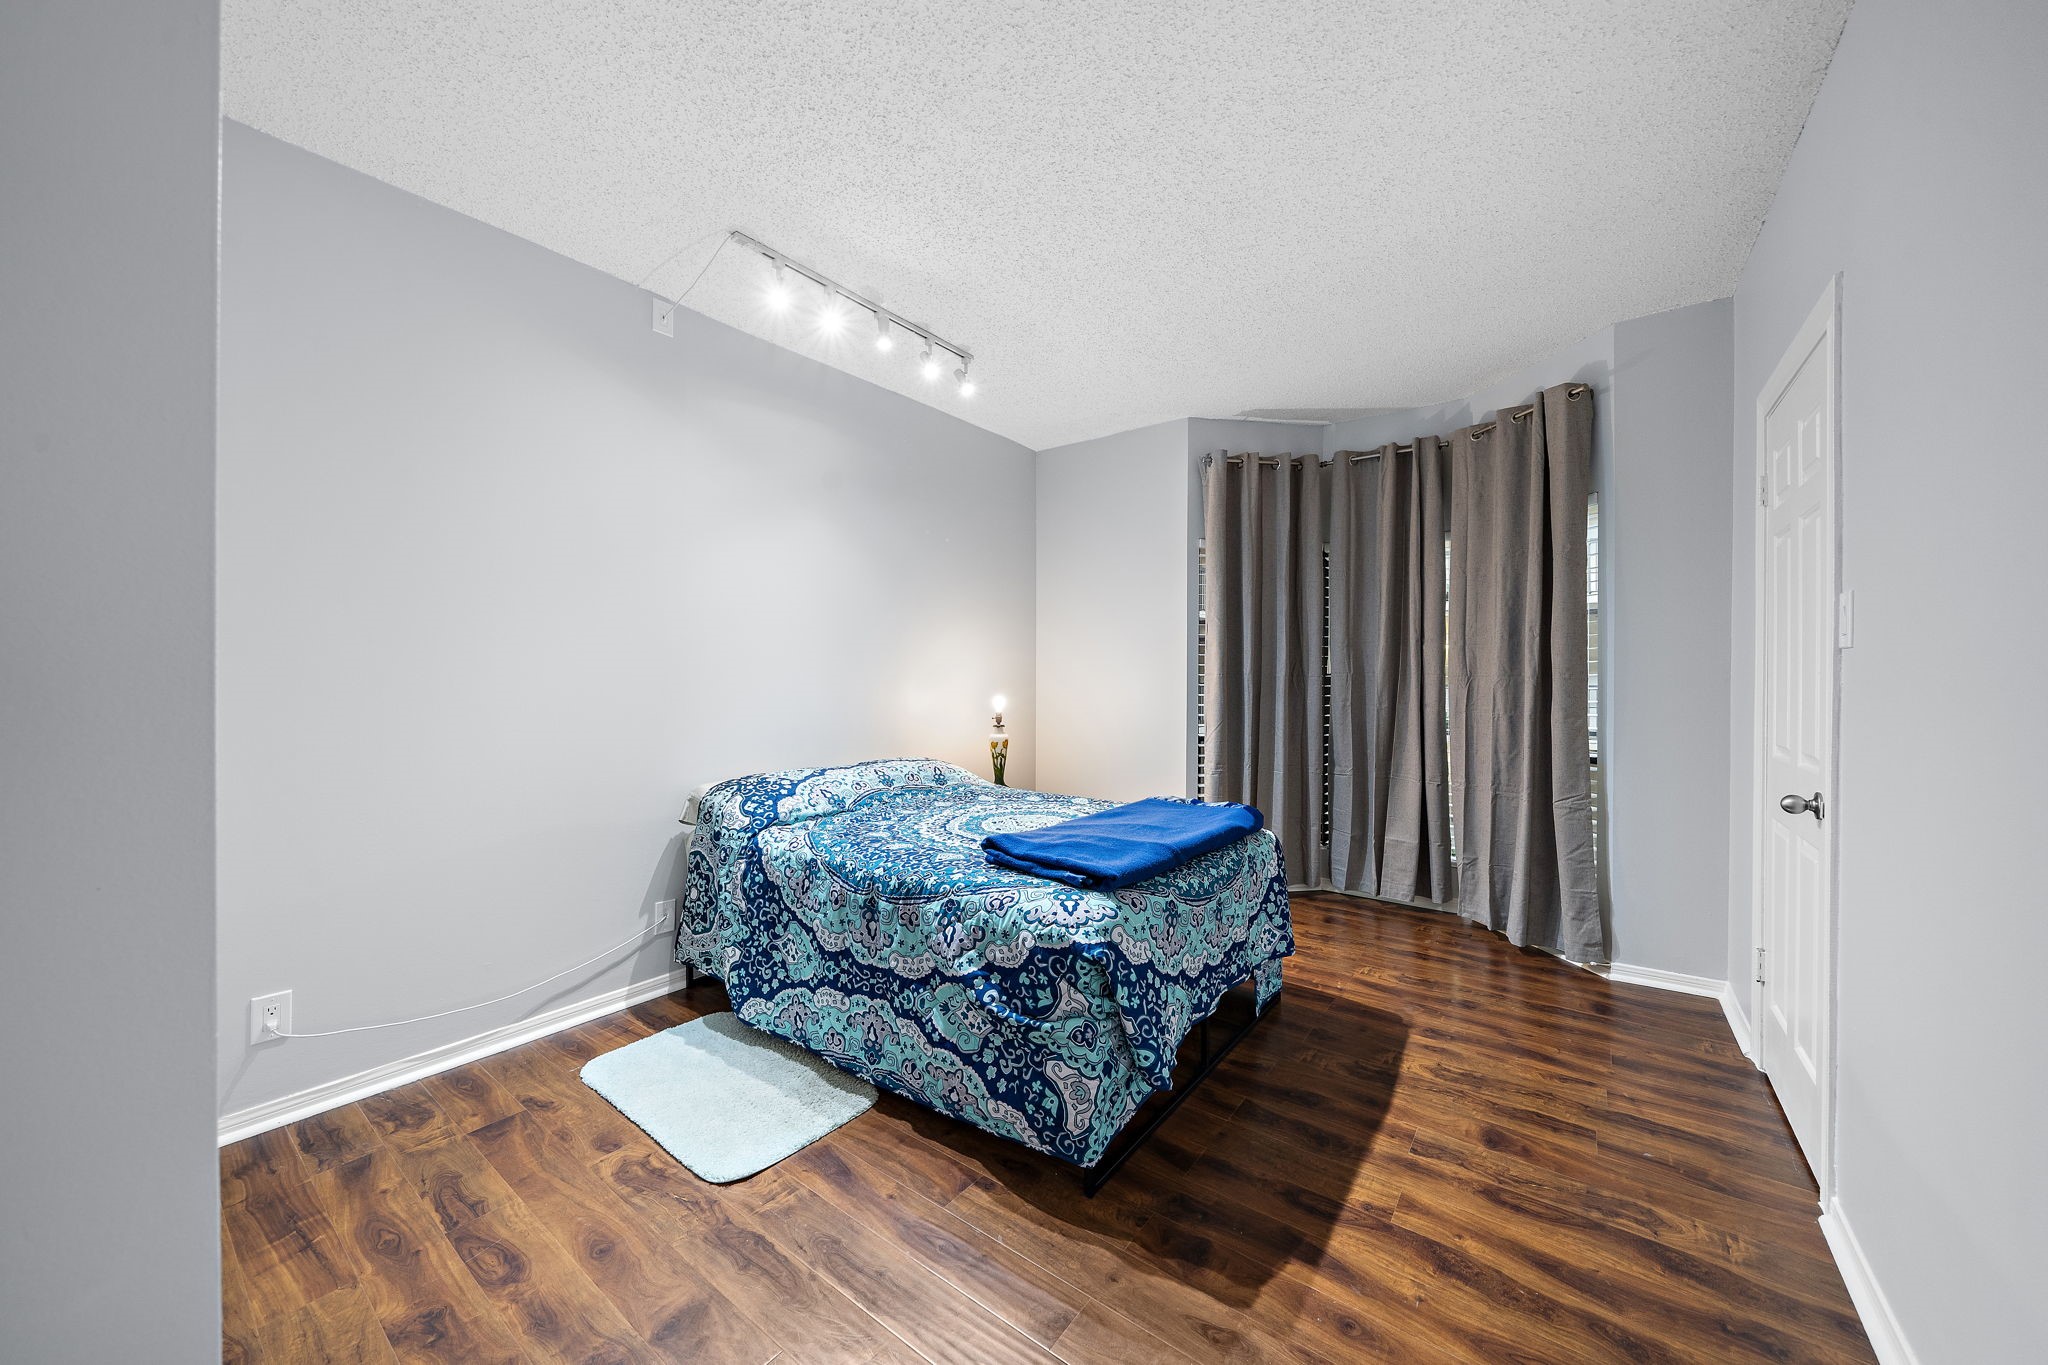 Bedroom with hardwood floor, gray walls, spotlighting, draped window, and white door.